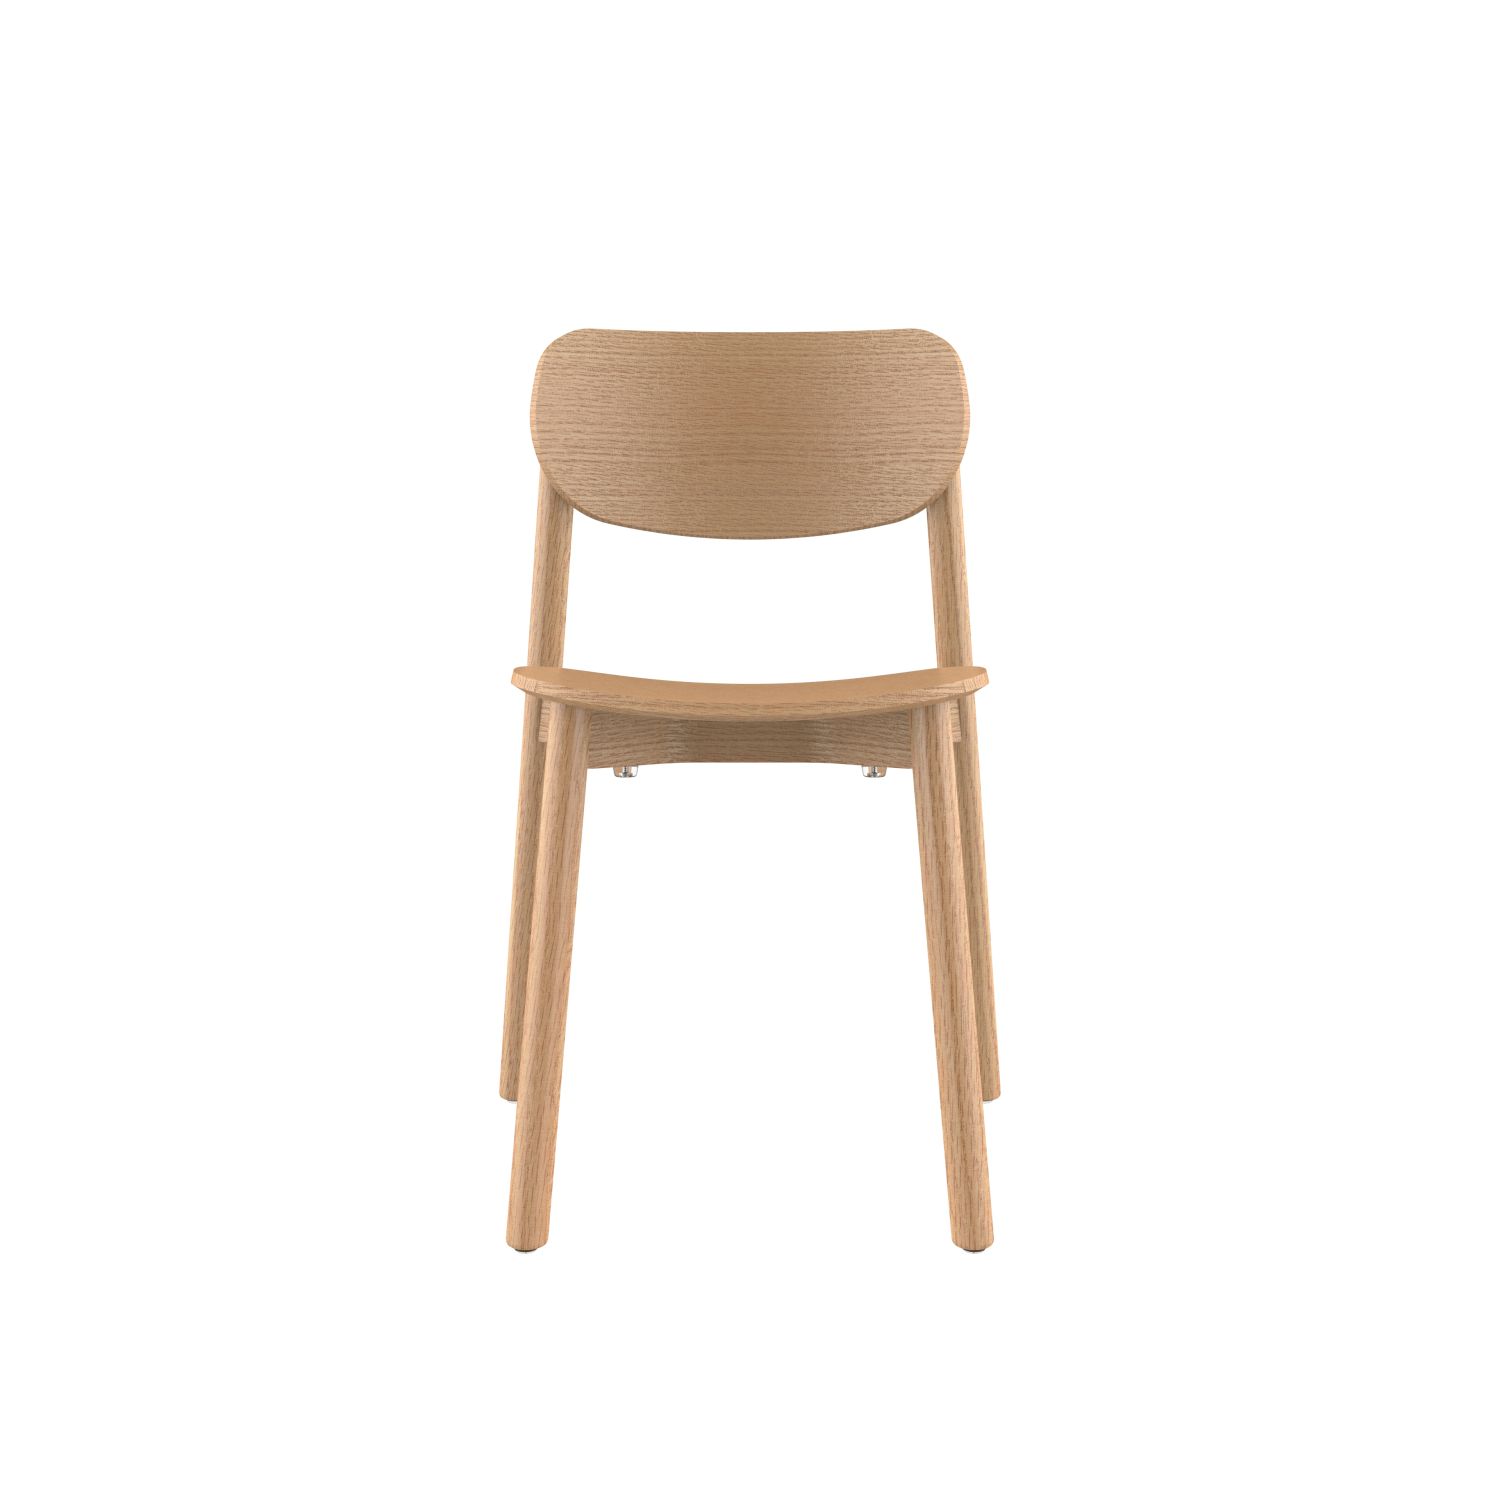 lensvelt studio stefan scholten 2thrd chair stackable no armrests mat oak hard leg ends